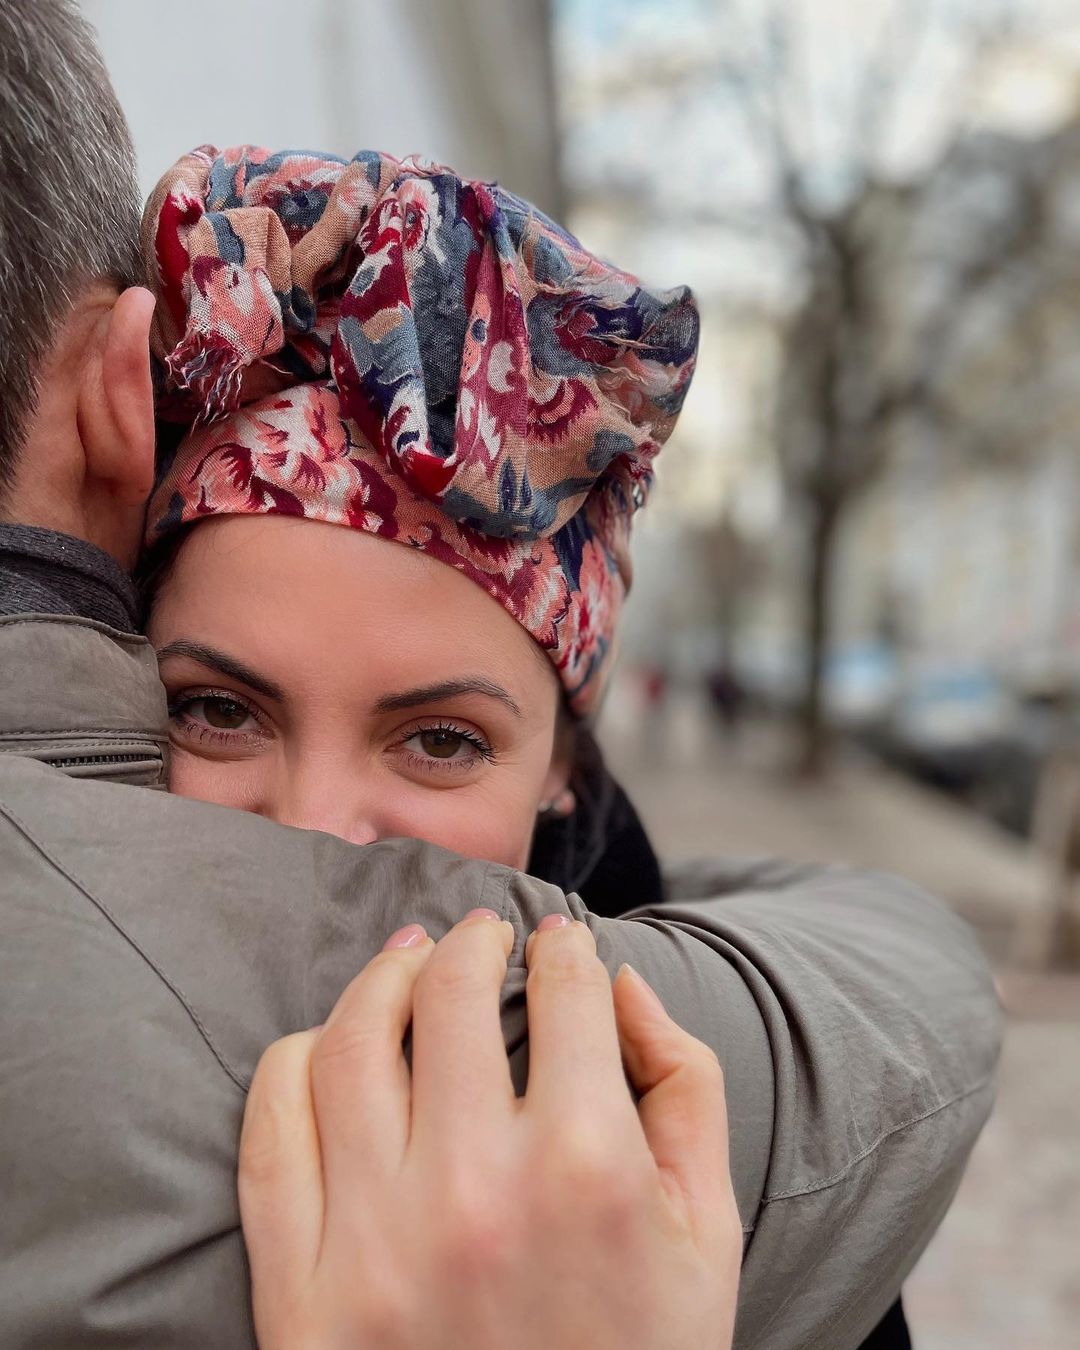 "Развестись - никогда": украинская звезда рассказала о своем муже, лицо которого прячет от всех (фото)